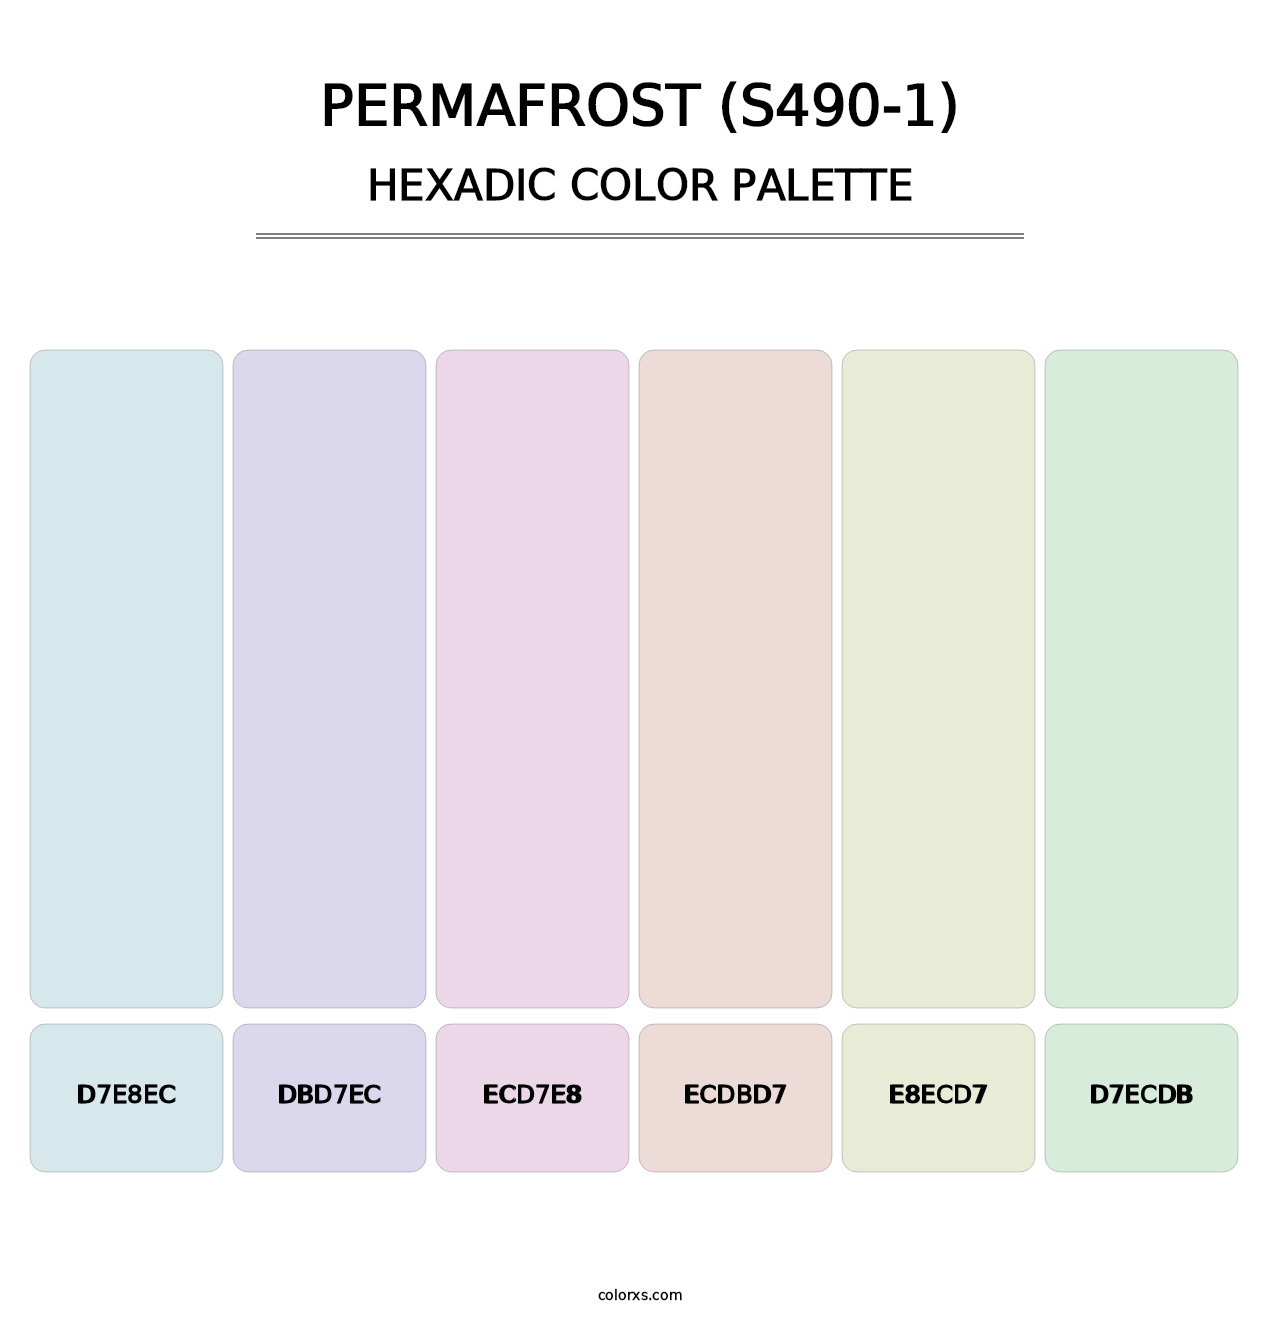 Permafrost (S490-1) - Hexadic Color Palette